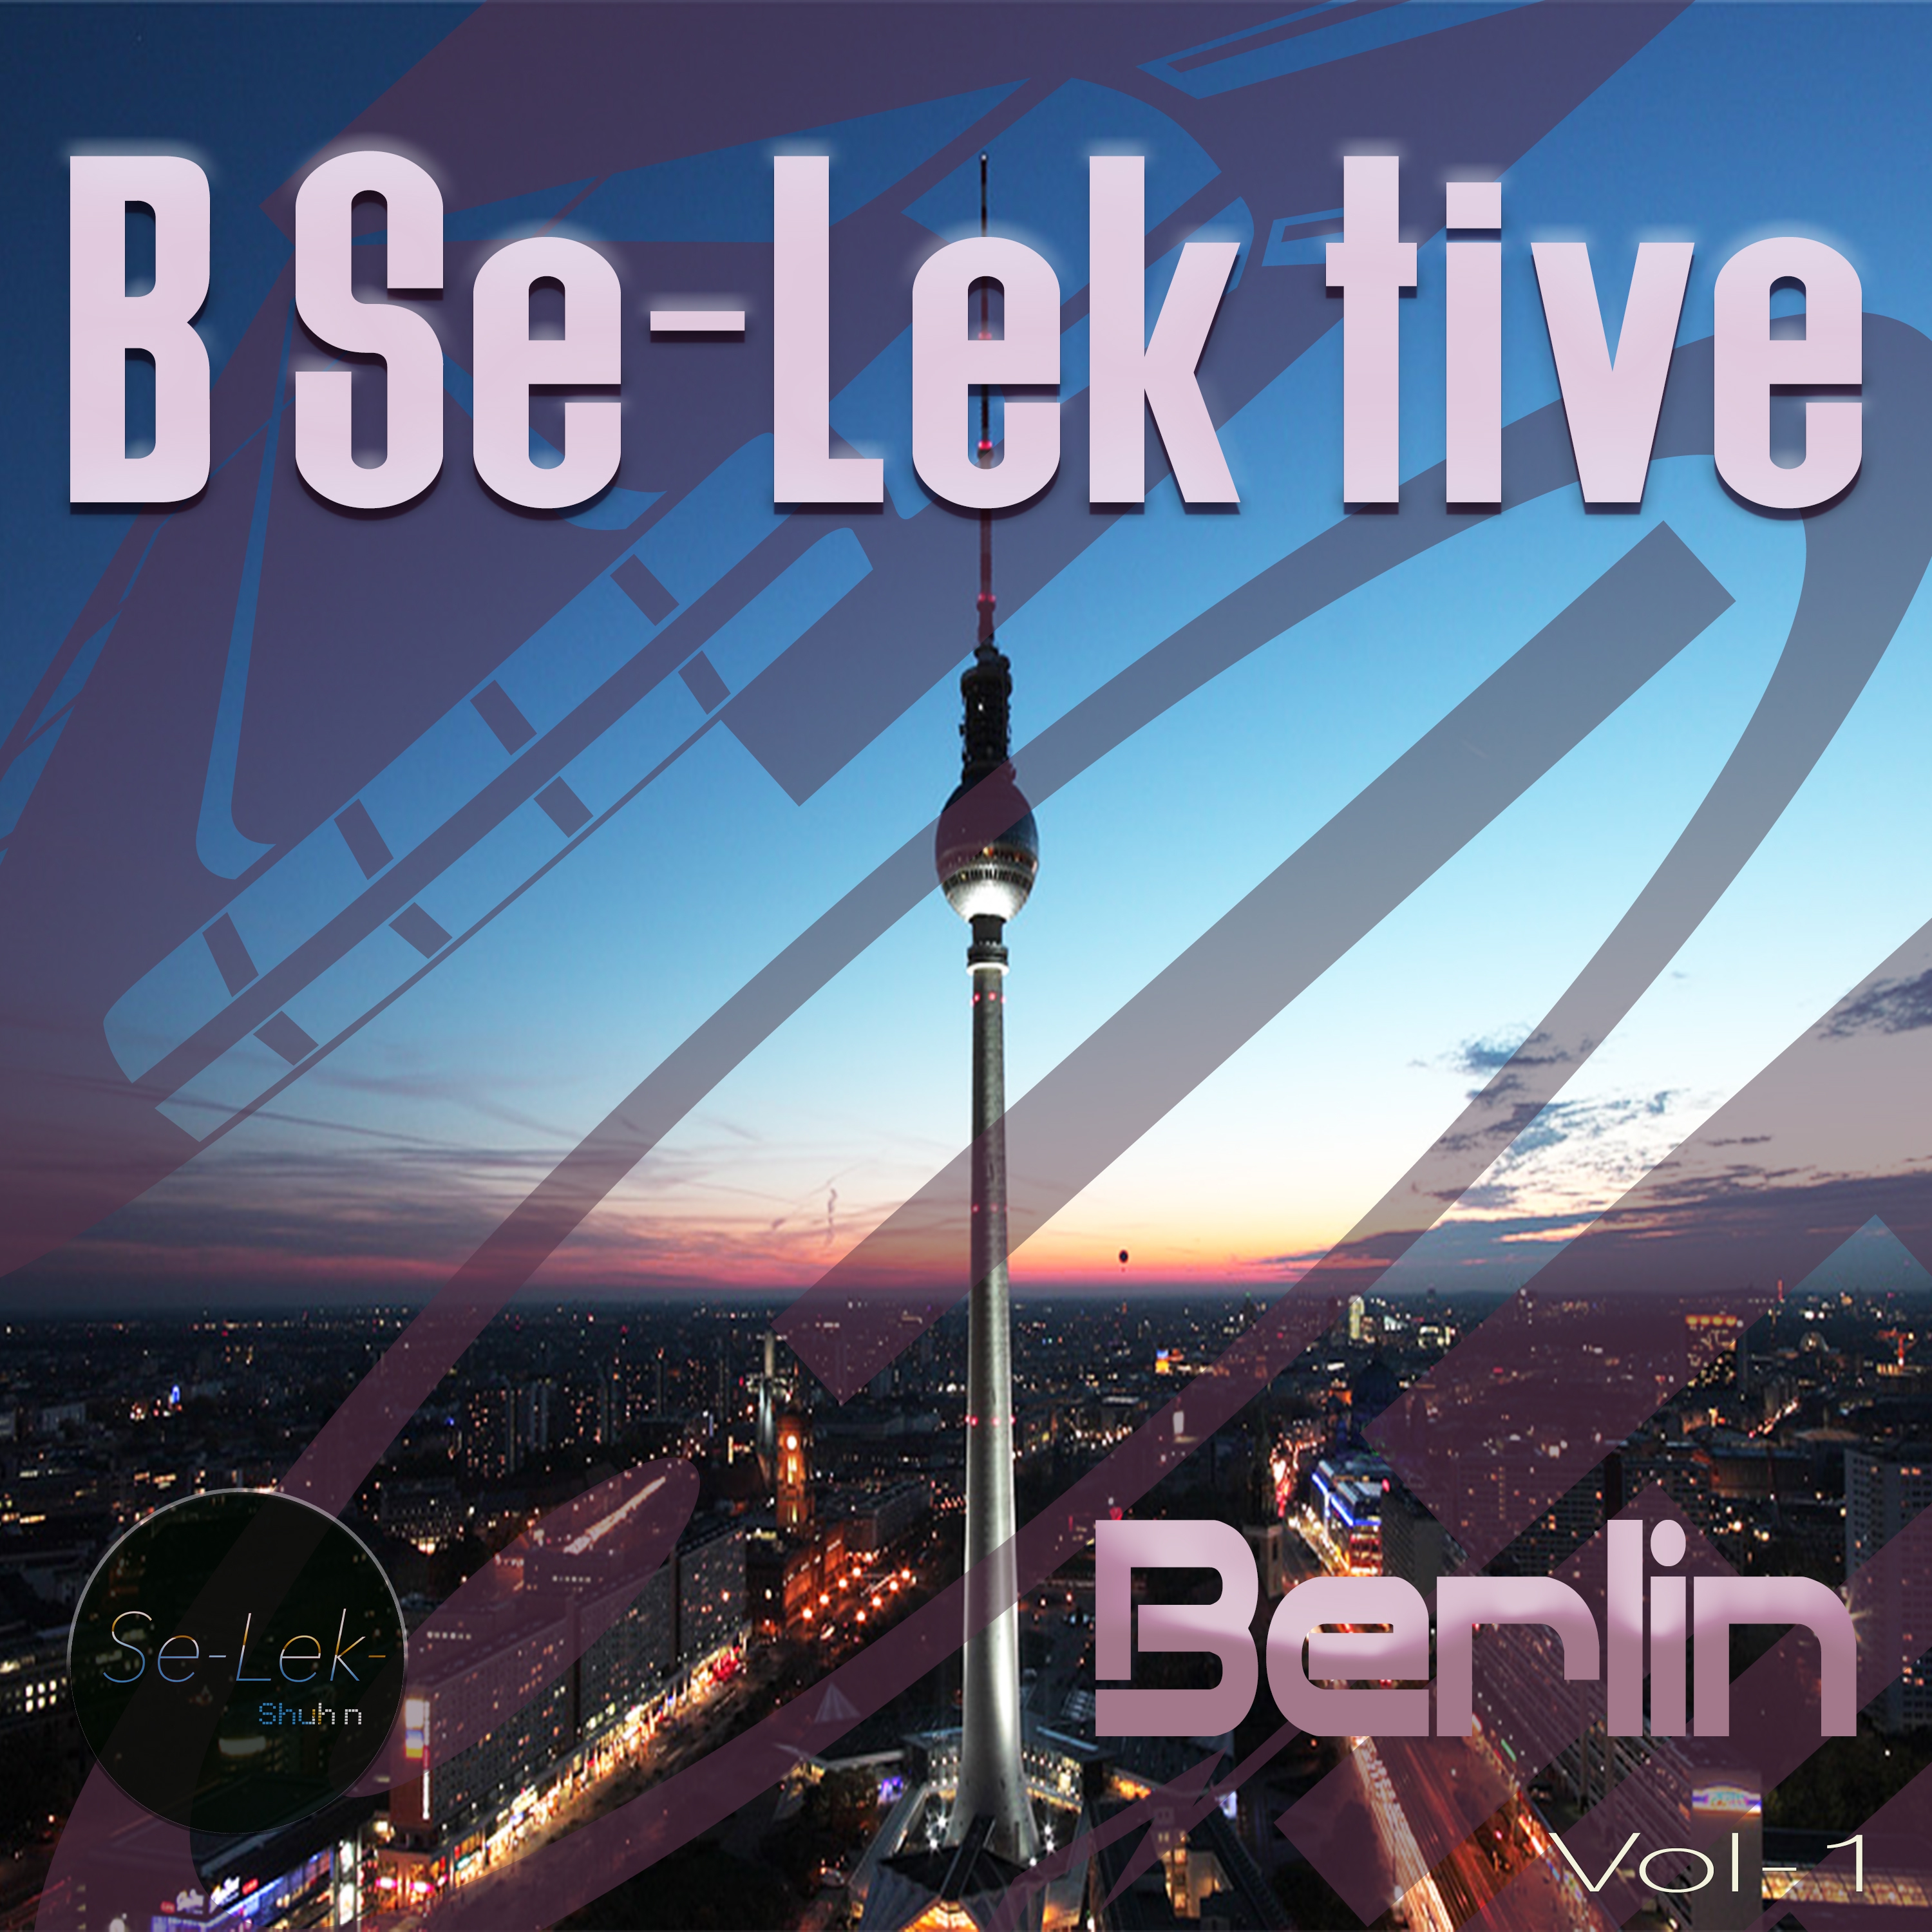 B Se-Lek tive Berlin, Vol. 1